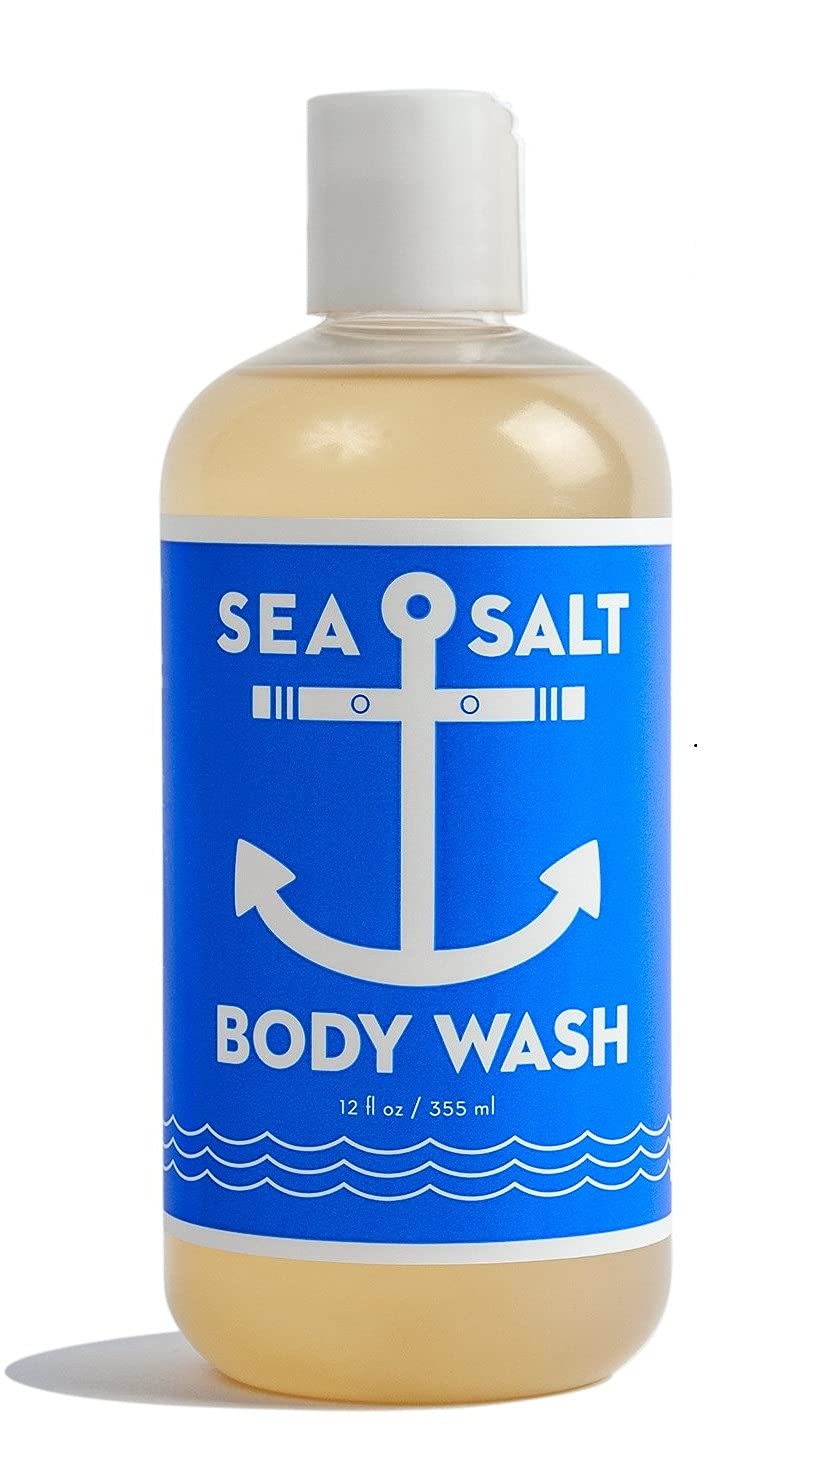 Swedish Dream Organic Sea Salt Body Wash, 12oz